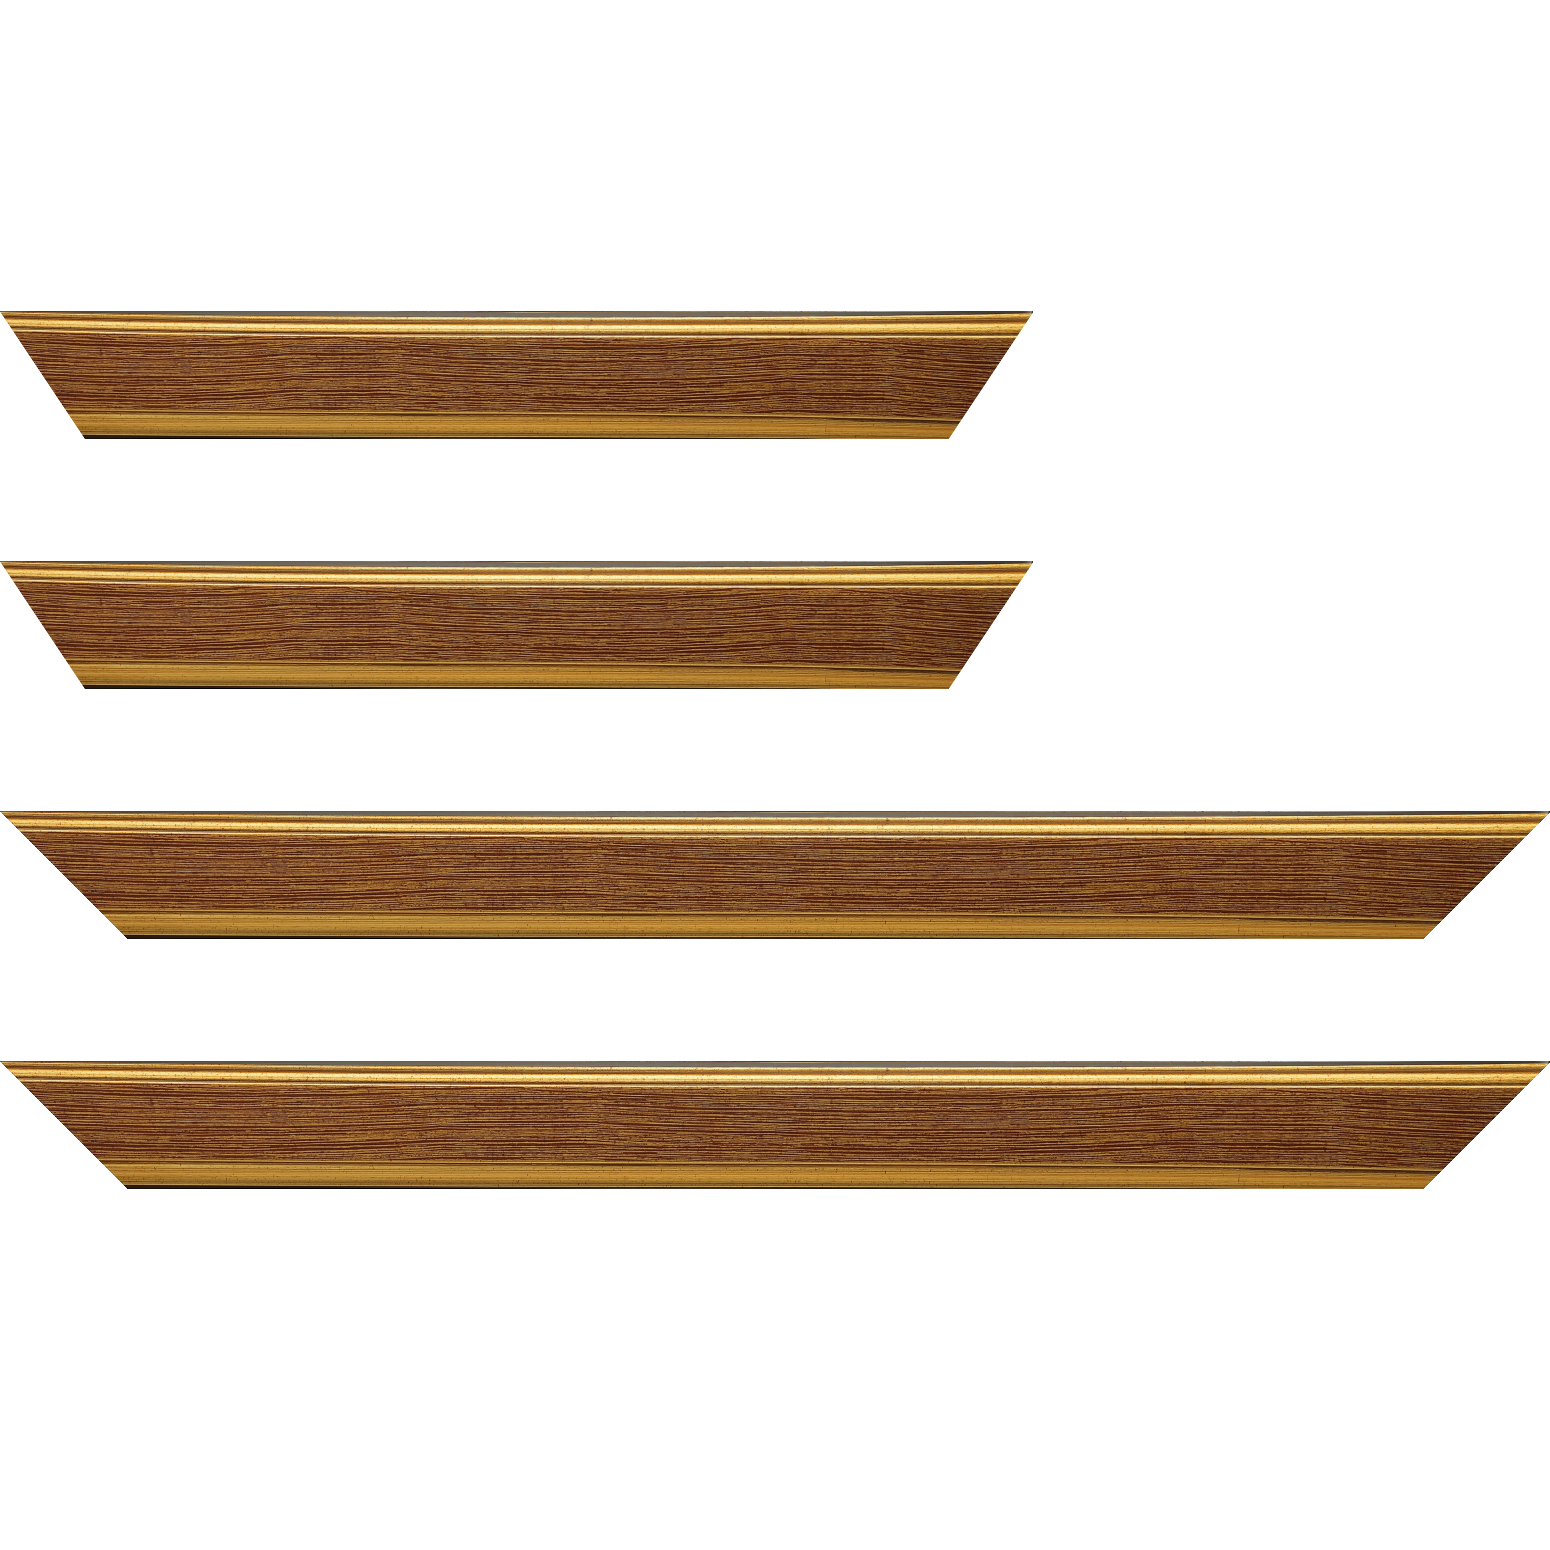 Baguette bois profil plat largeur 3.5cm couleur or fond bordeaux filet or - 50x60